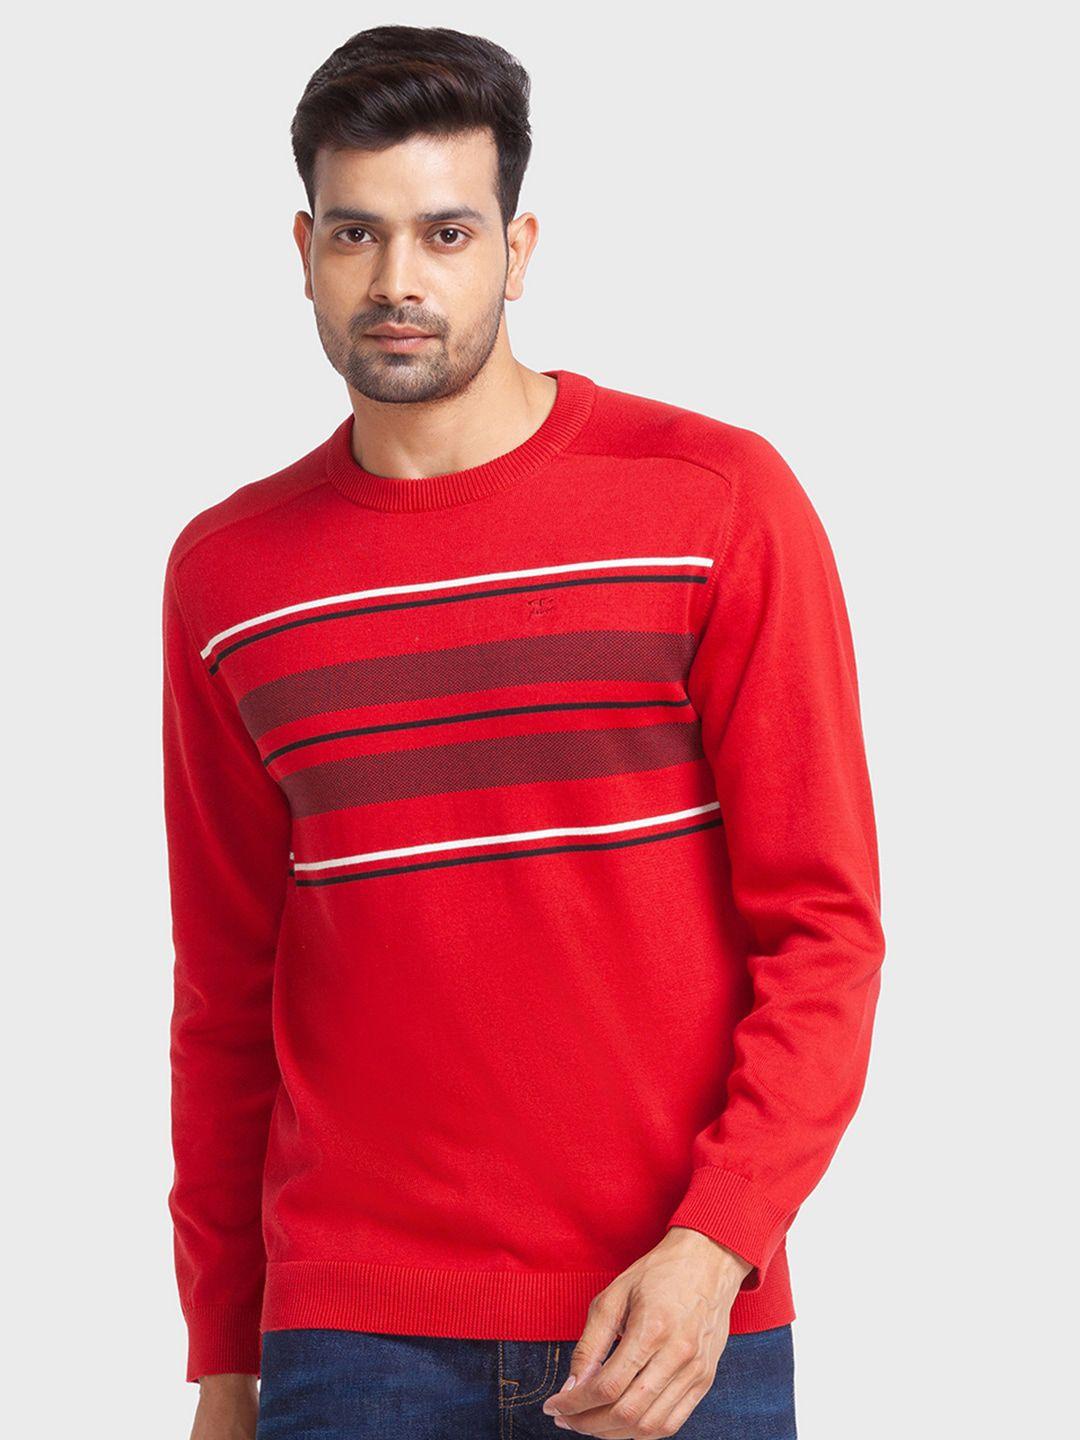 colorplus-men-striped-cotton-pullover